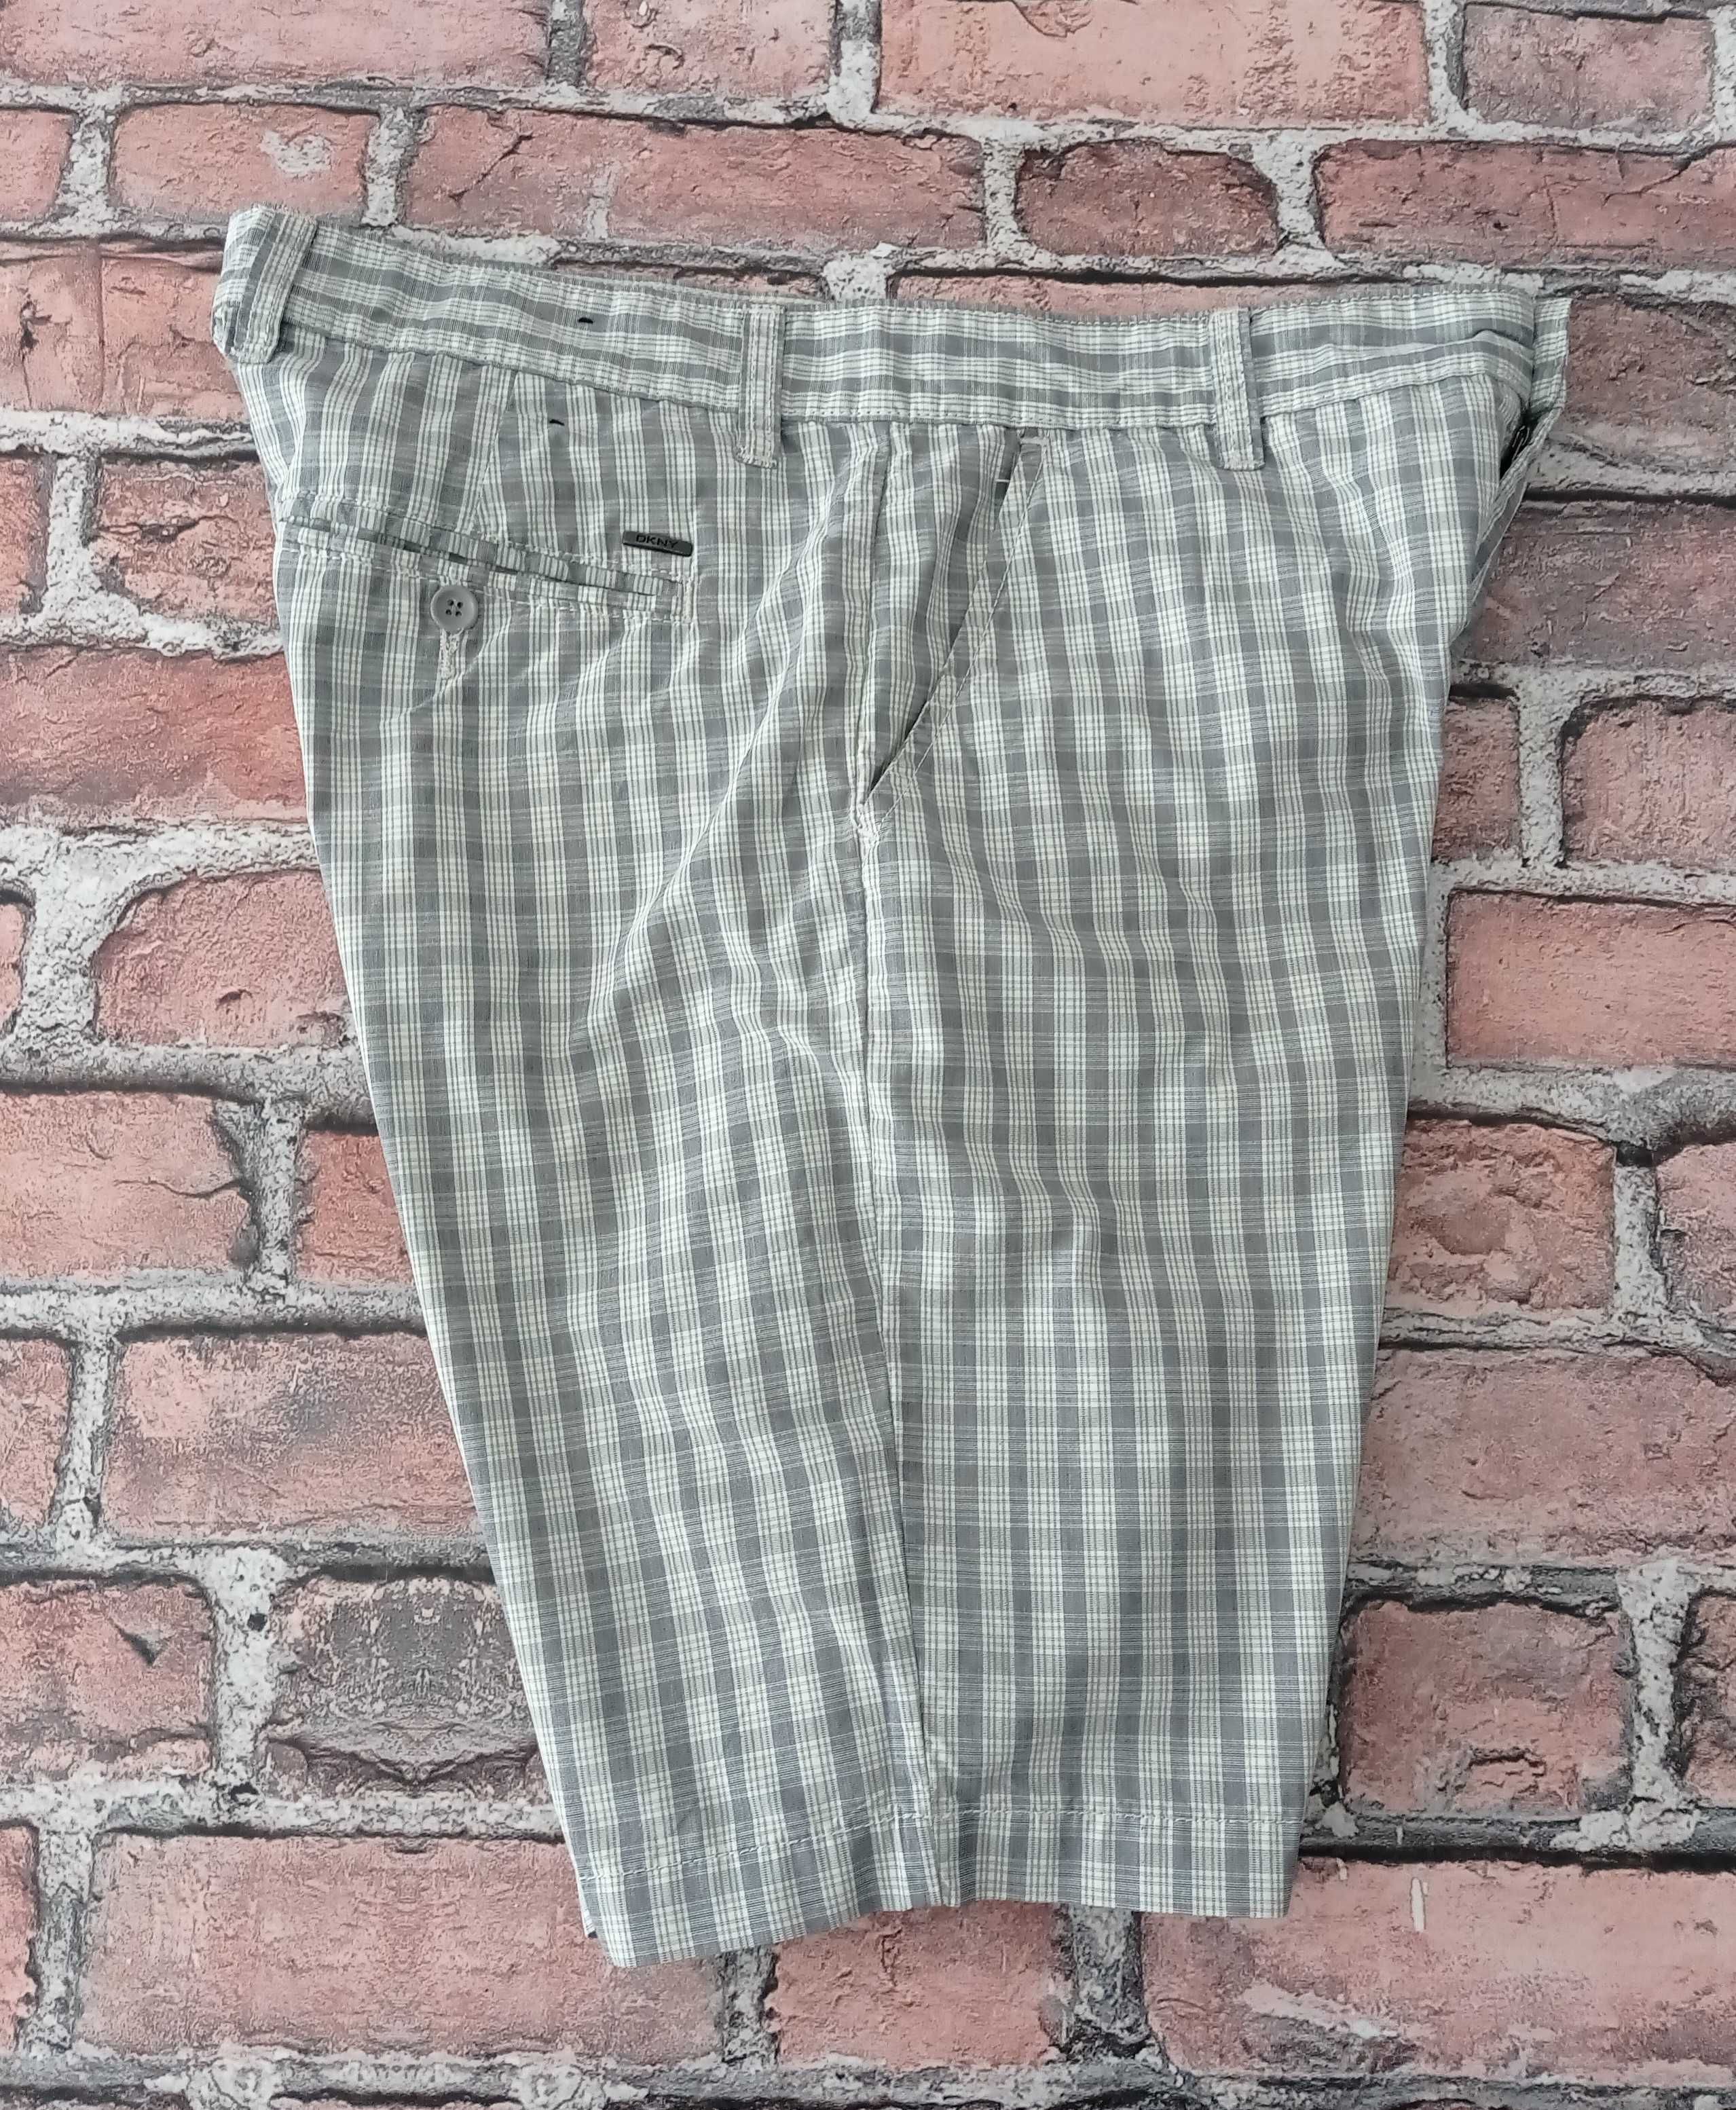 DKNY Jeans szorty męskie 34